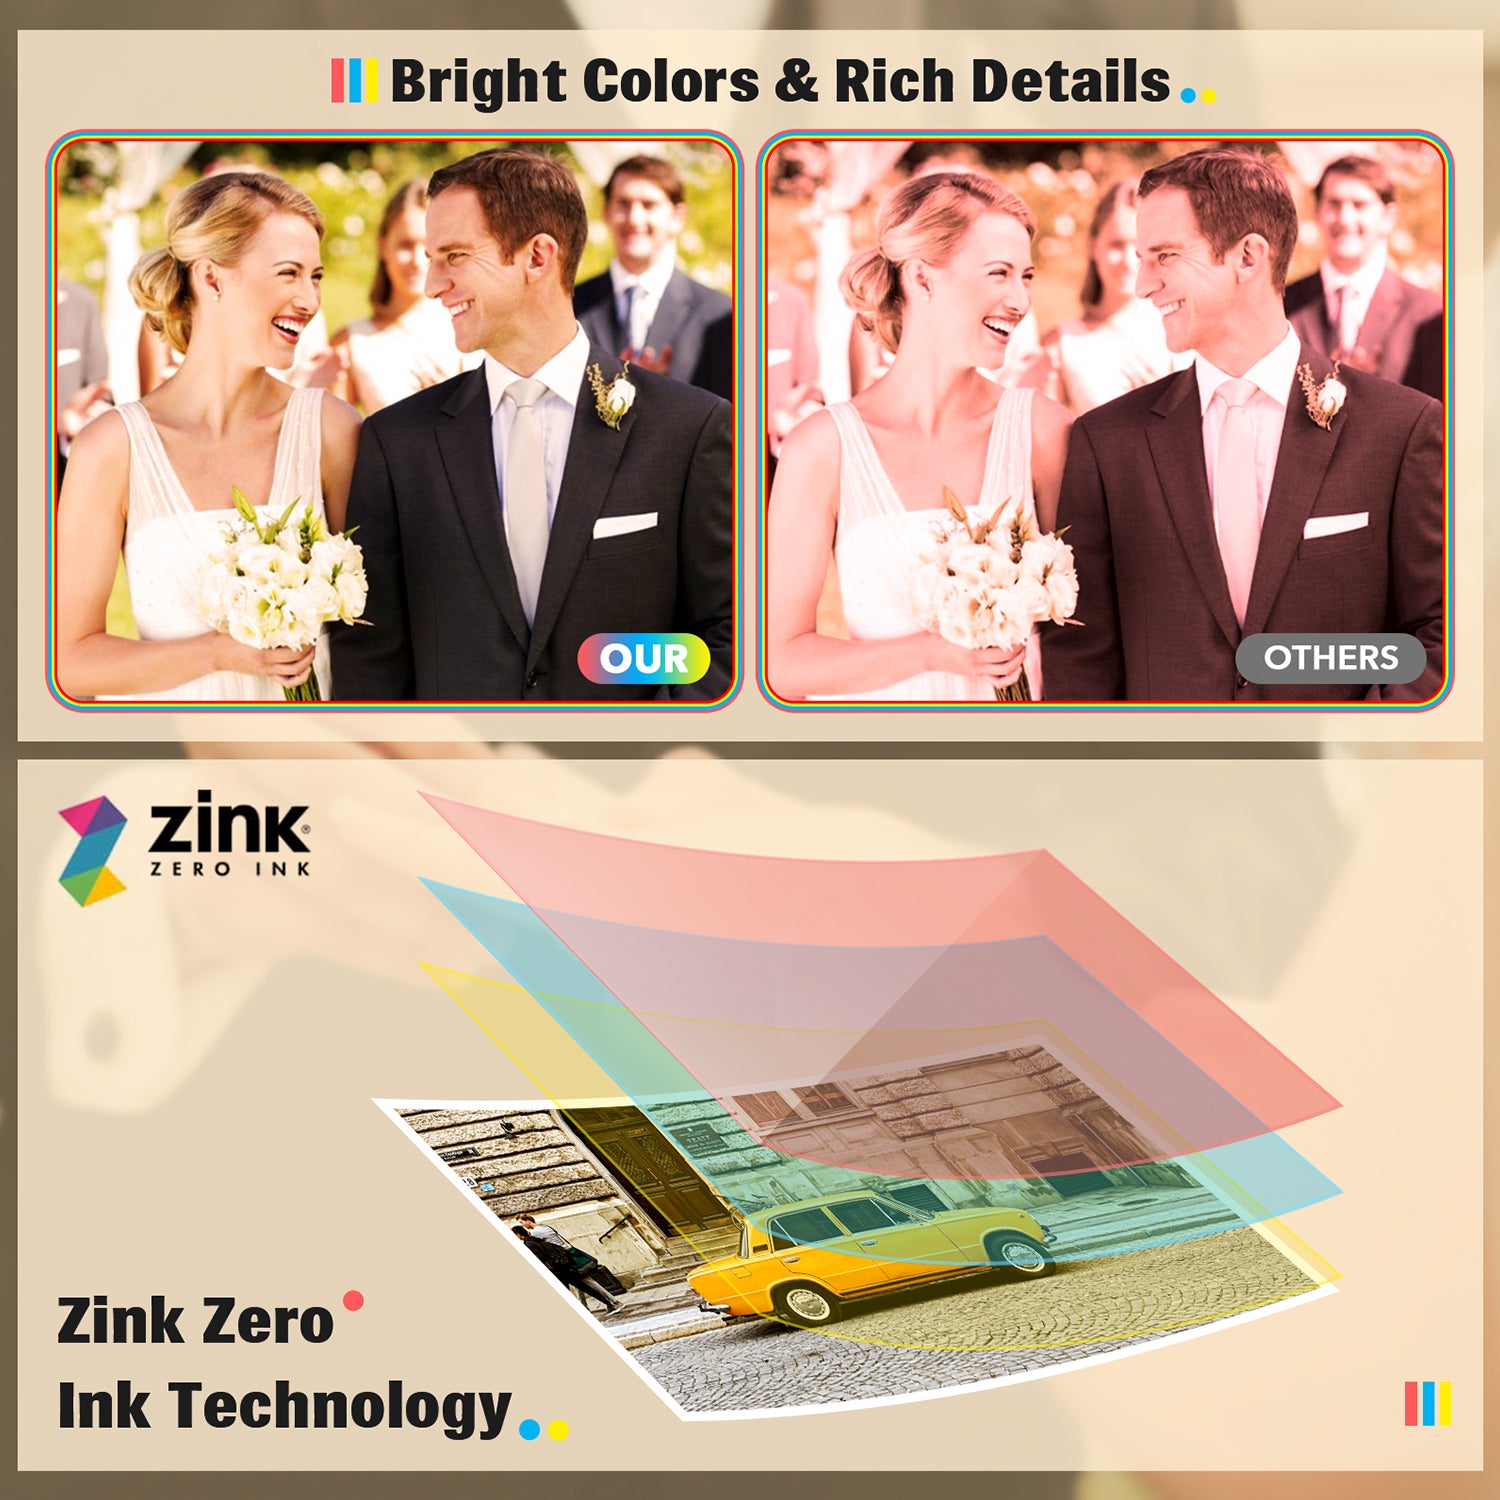 zink zero ink technology